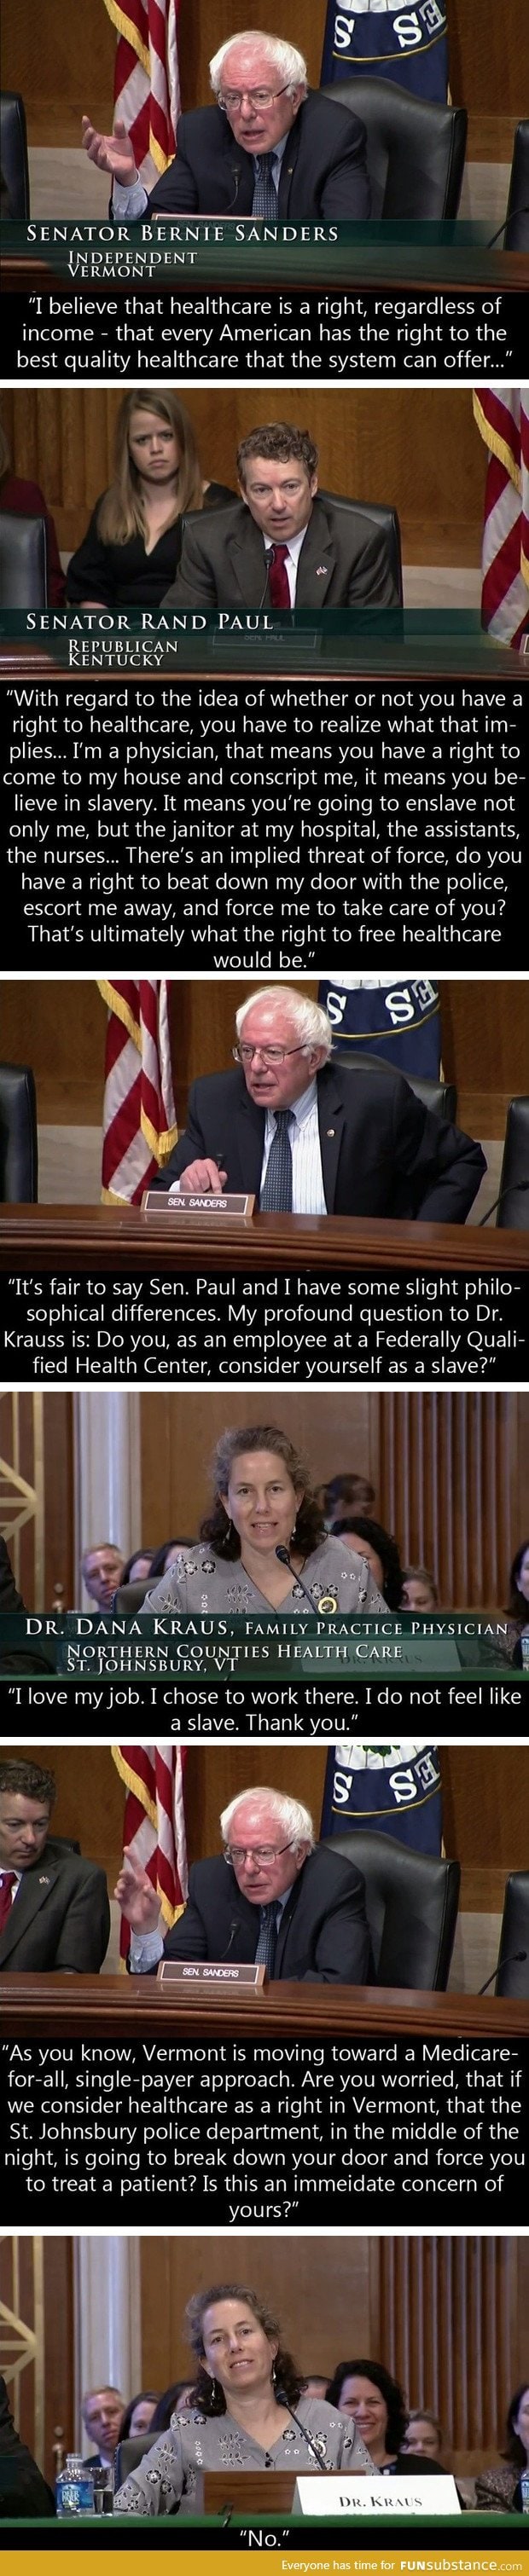 Healthcare: Sanders vs Paul